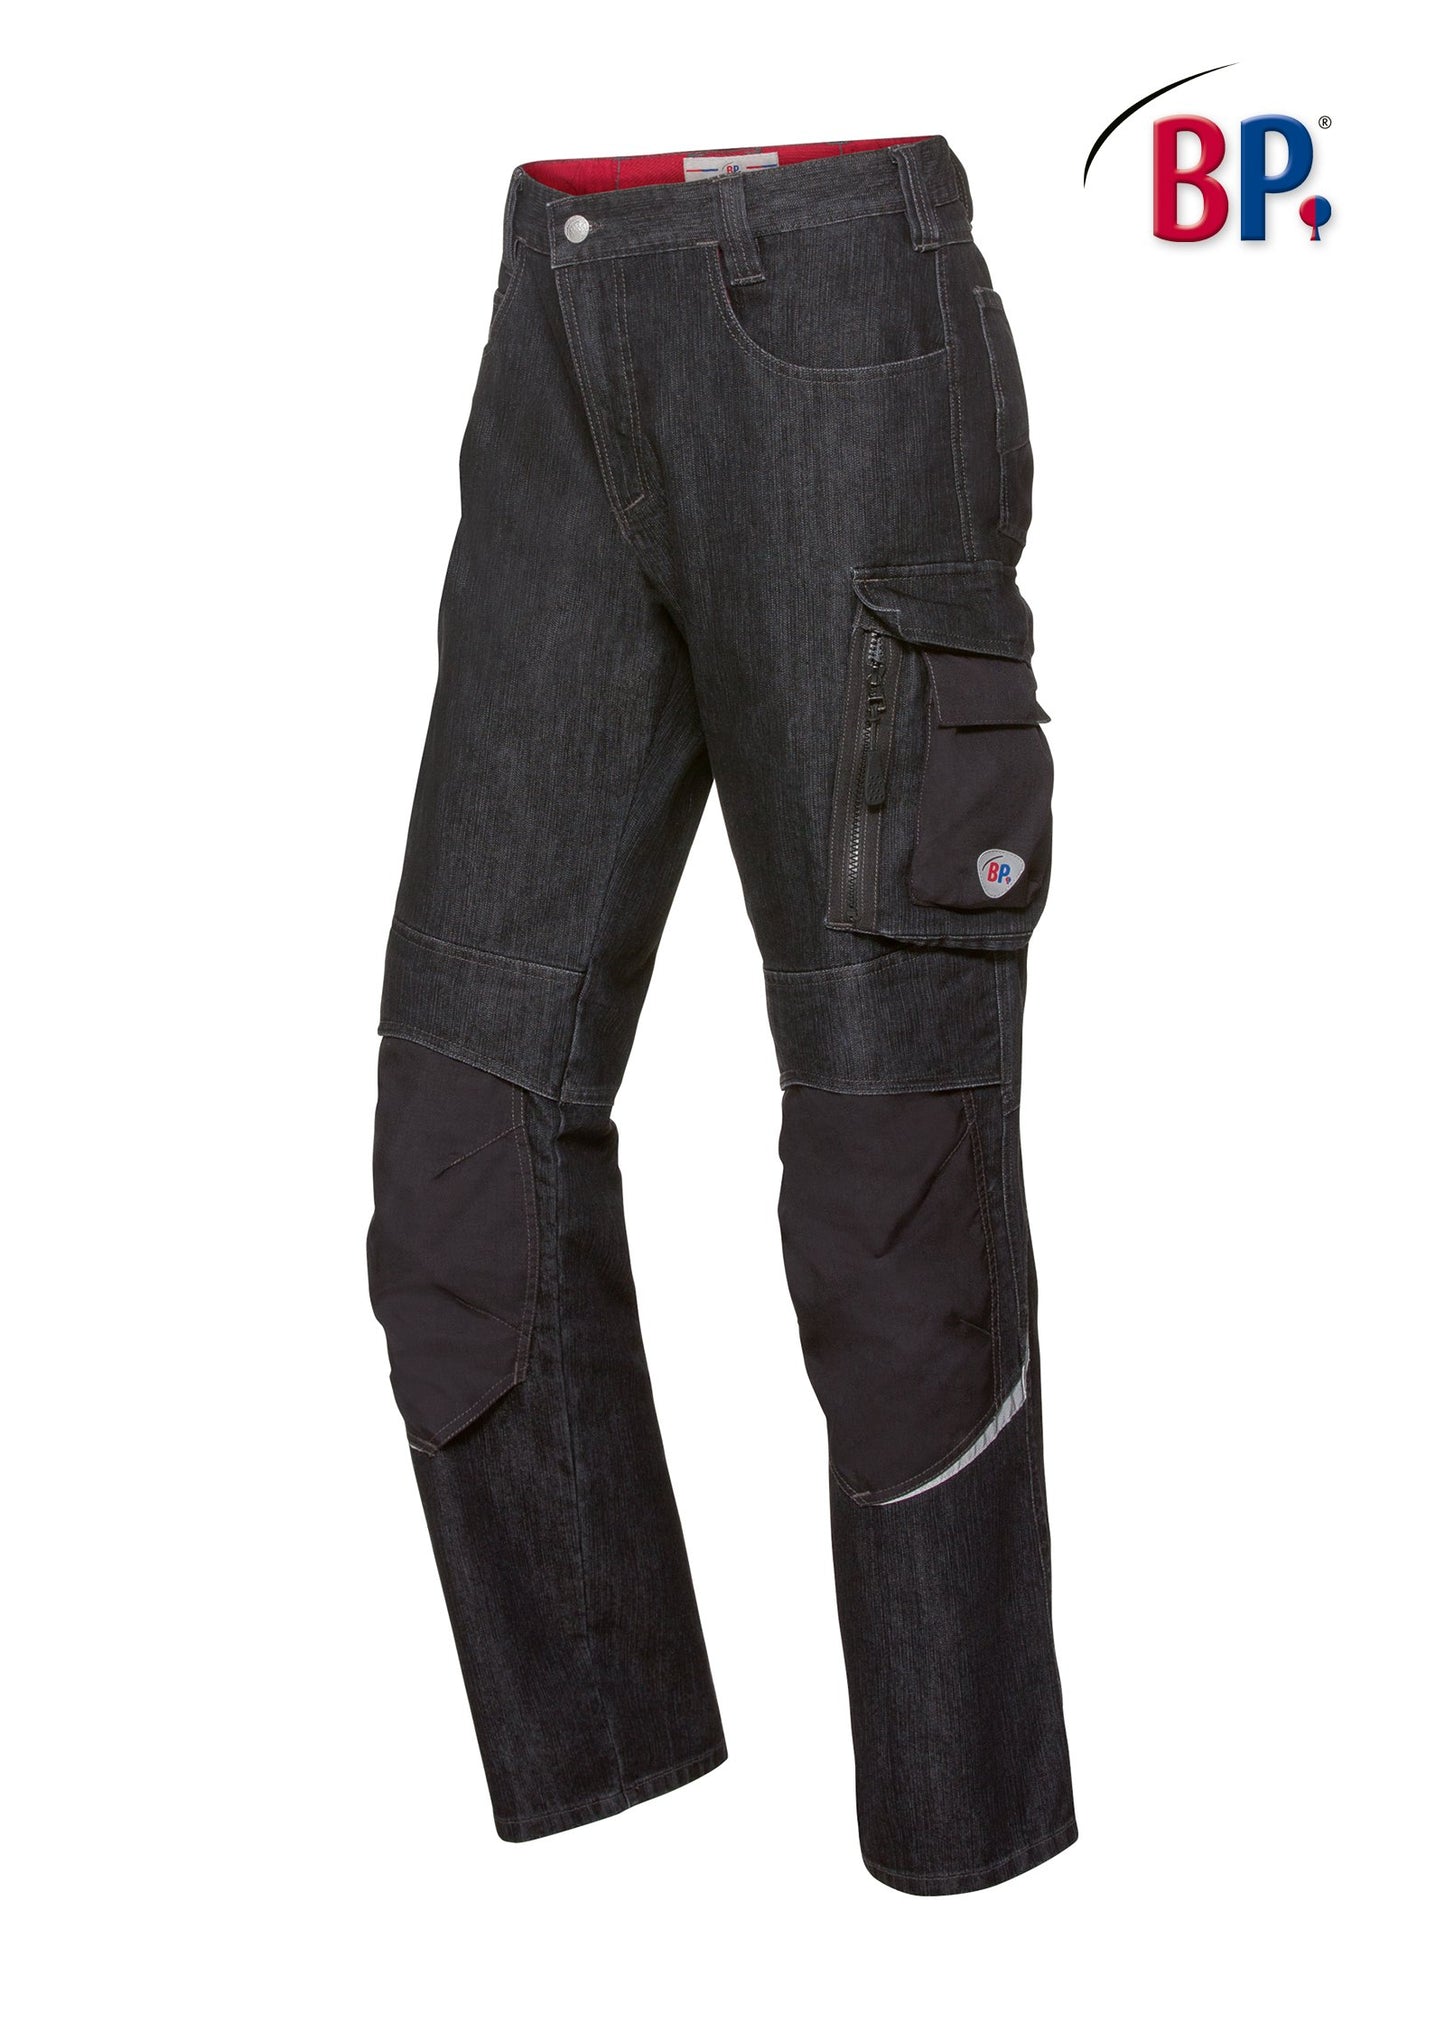 BP® Worker-Jeans mit Kniepolstertaschen